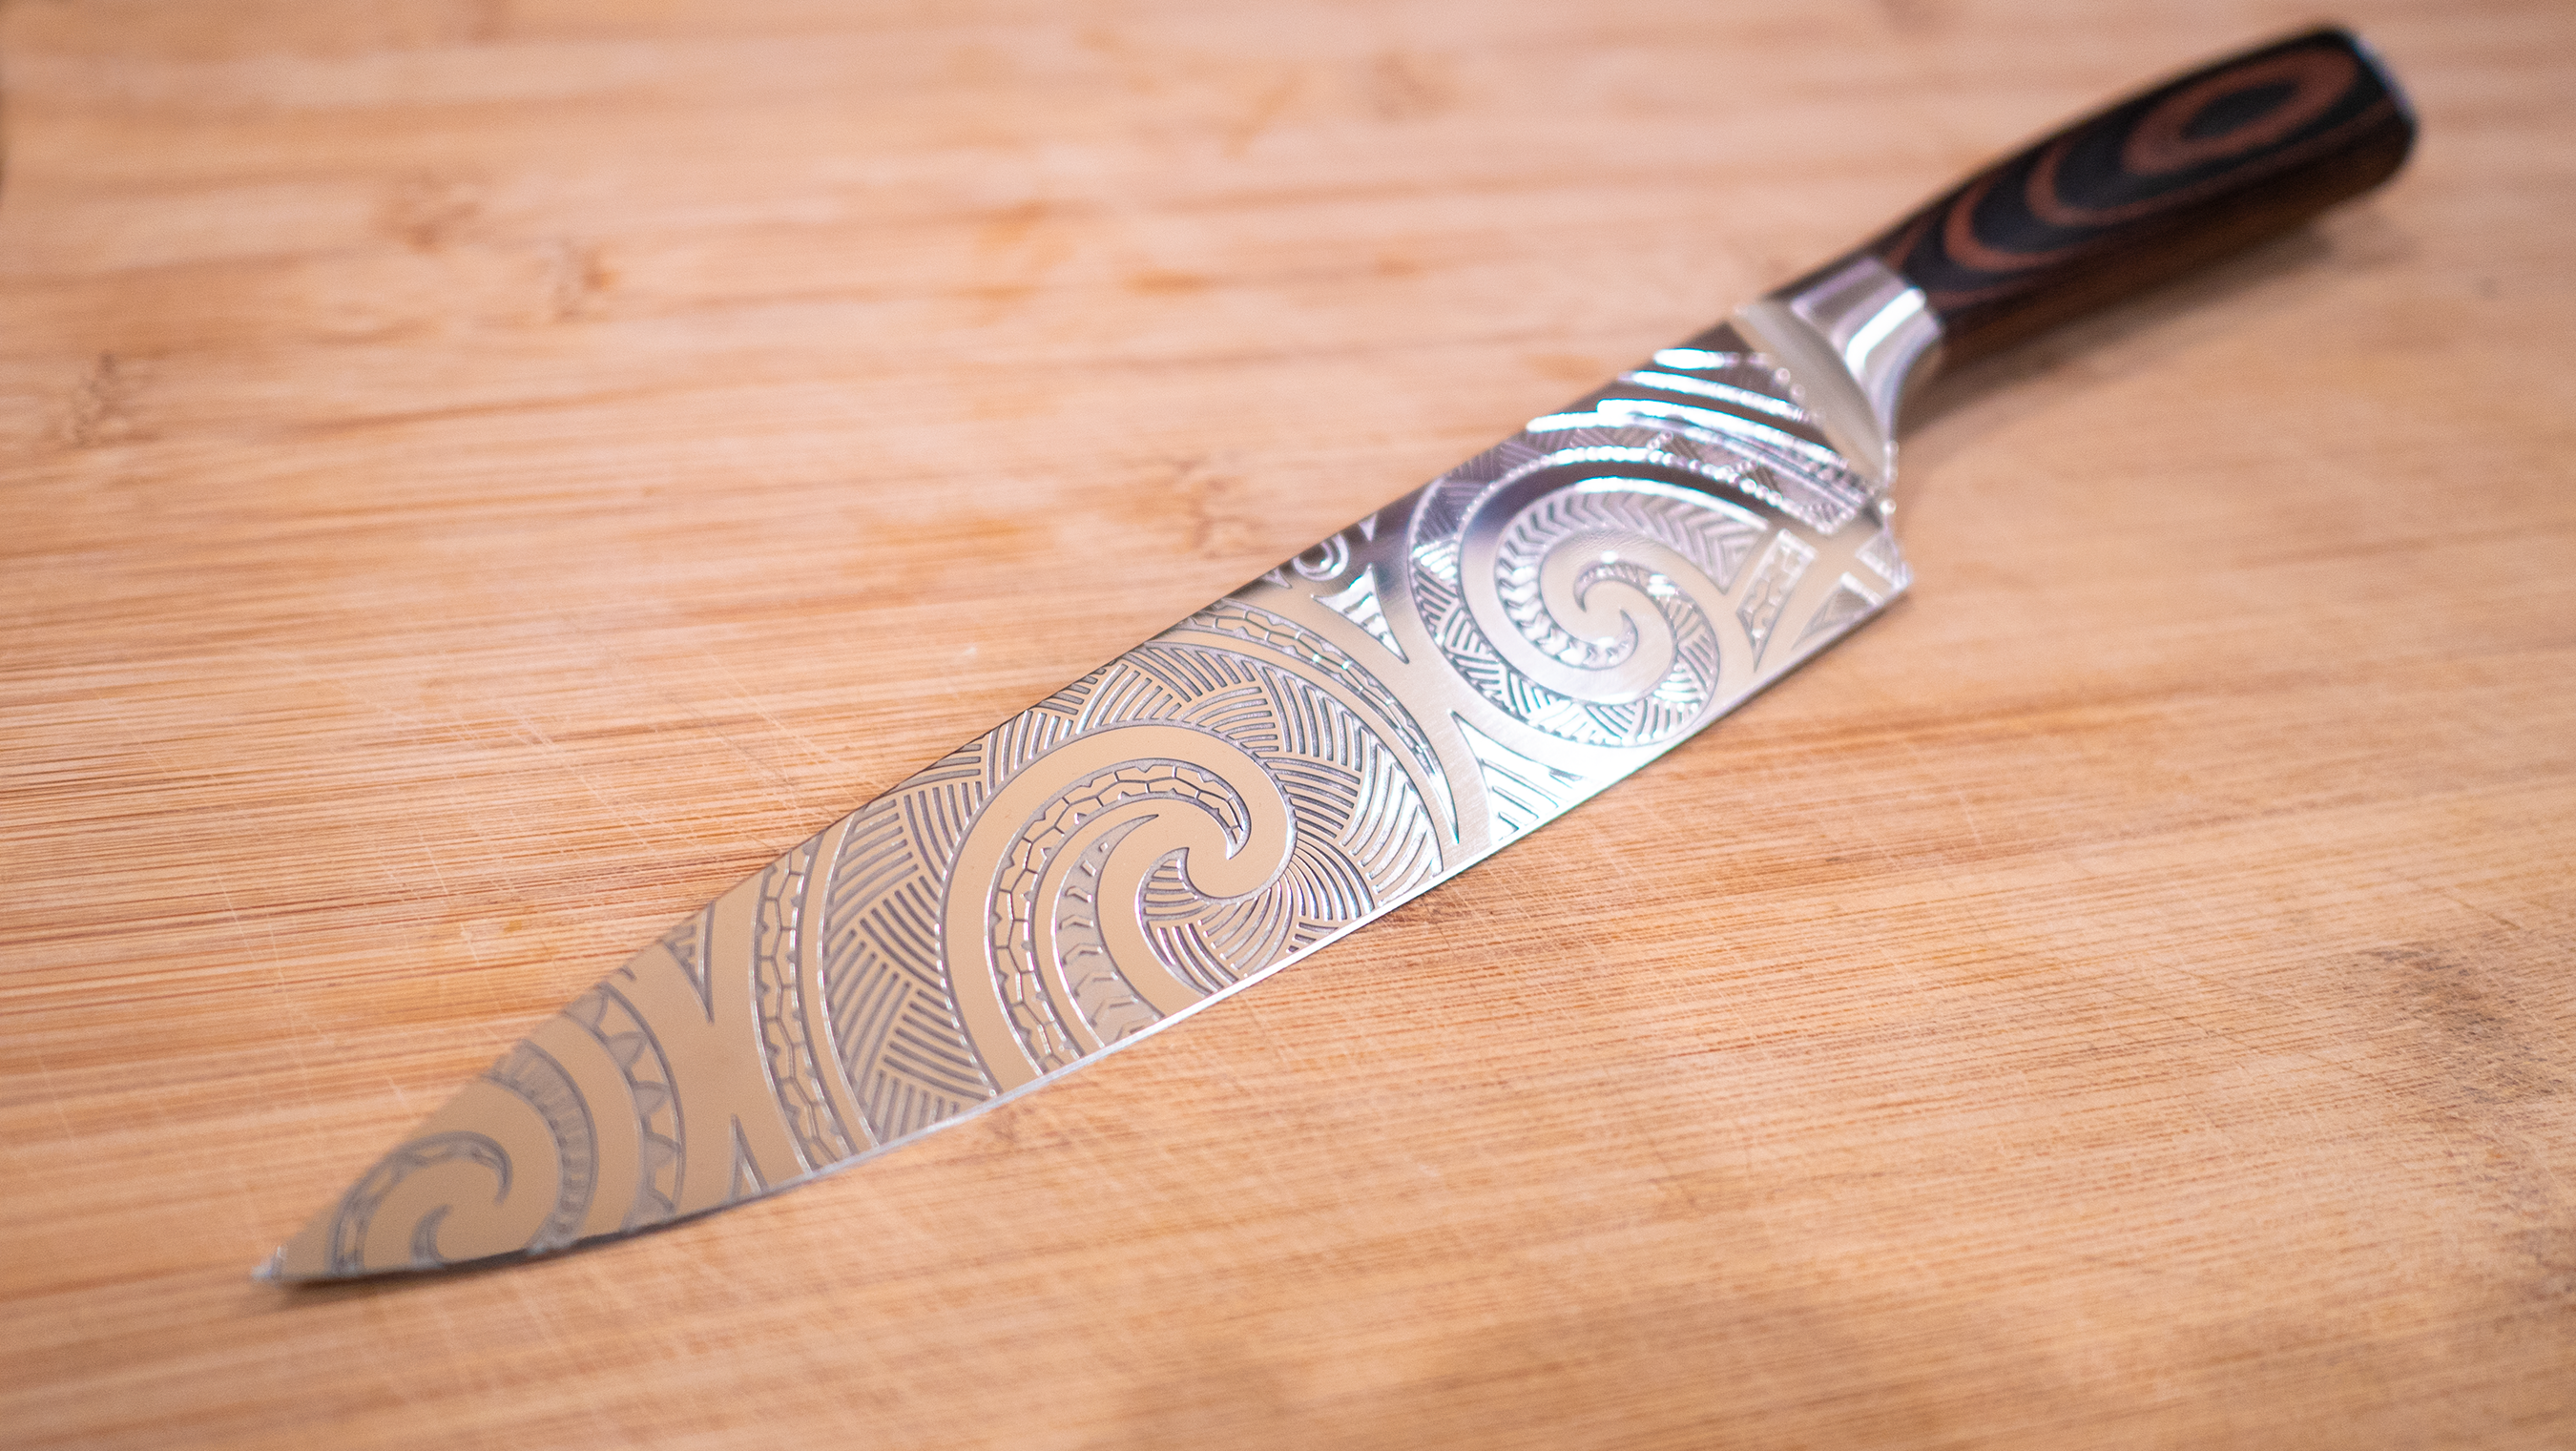 Da One - 8 Chef Knife – Da Poke Man Cutlery